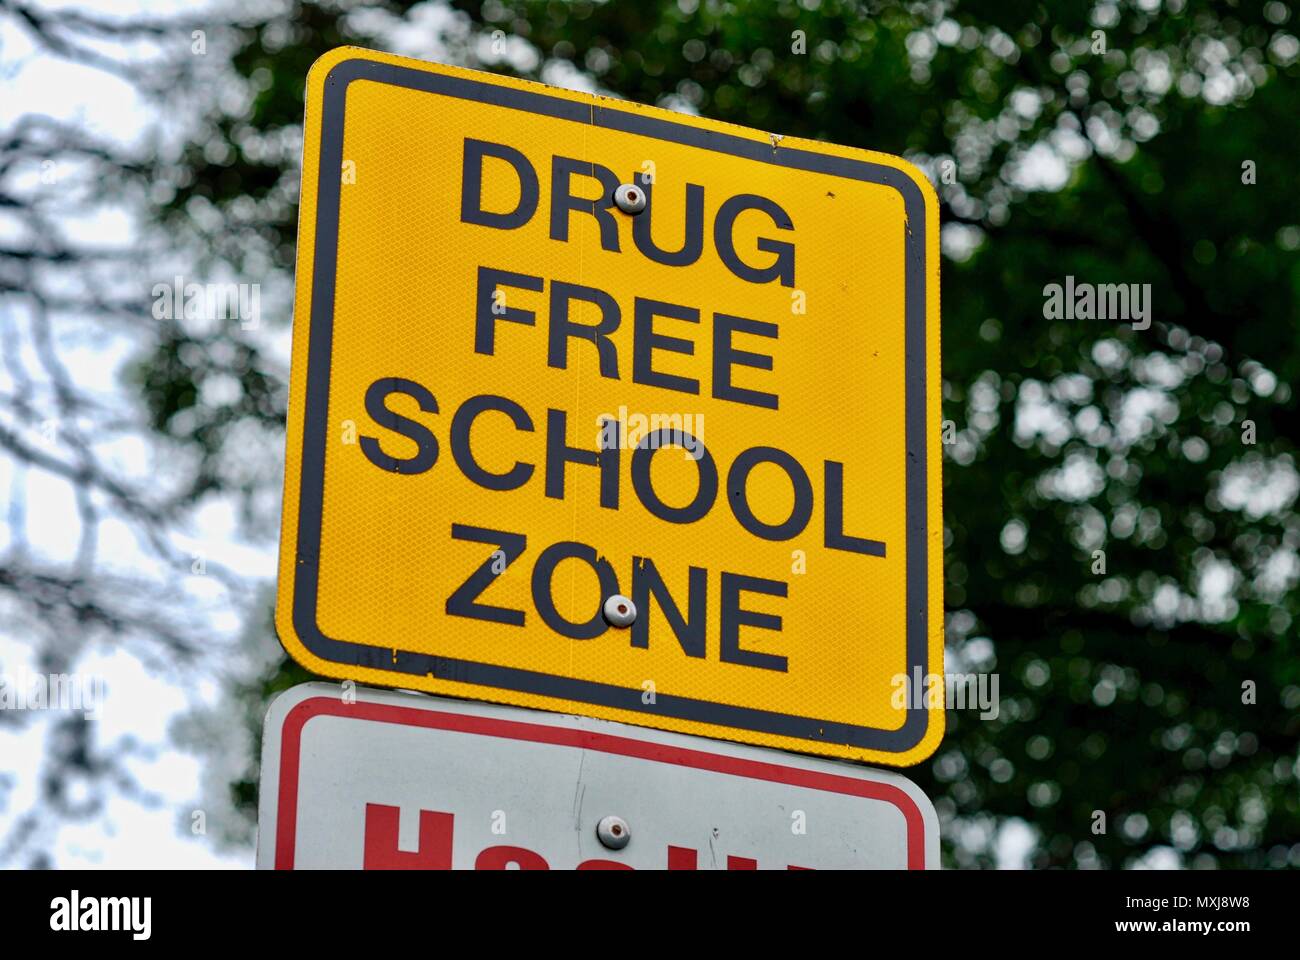 Nahaufnahme eines Zeichens in der Nähe einer Schule Warnung, dass es sich um eine "freie Schule zone'. Hintergrund schließt Baumästen und der Himmel. Stockfoto